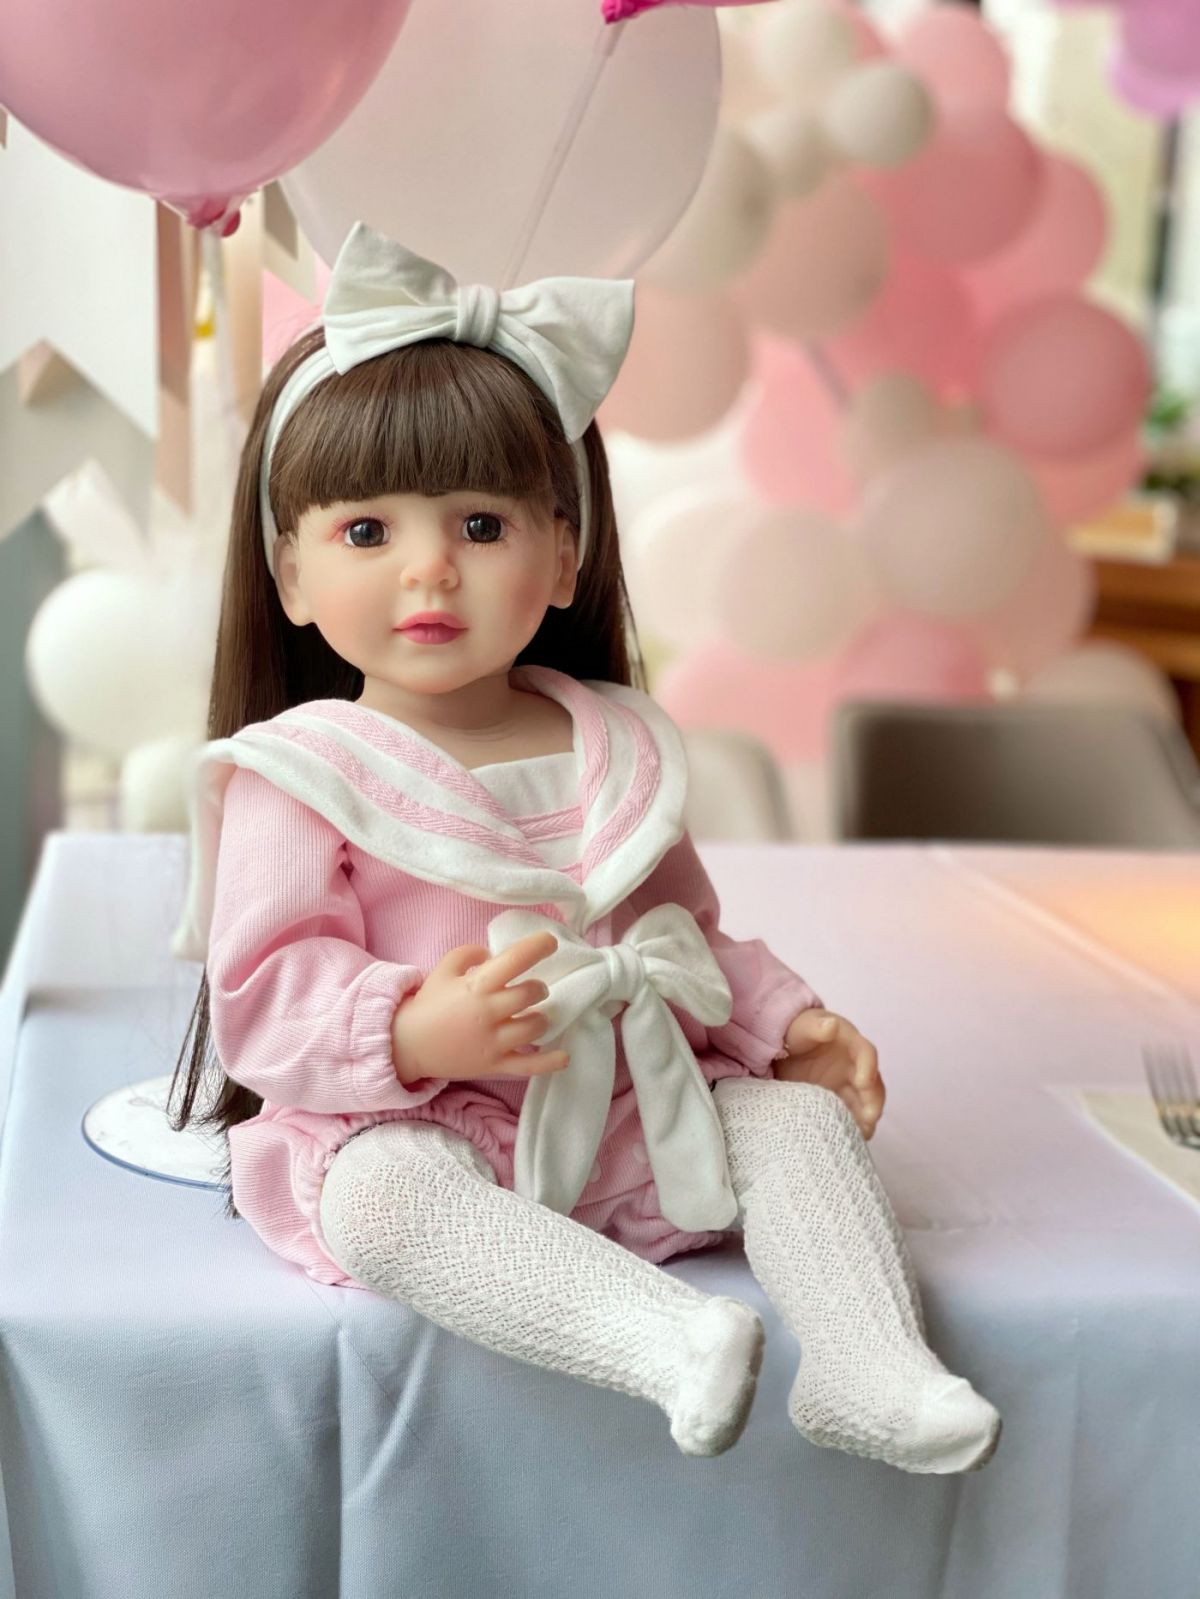 Reborn Baby Dolls Silicone Cute Soft Babies Doll Fashion Bebe Reborn Dolls 55cm Baby Toys for Girls (6)